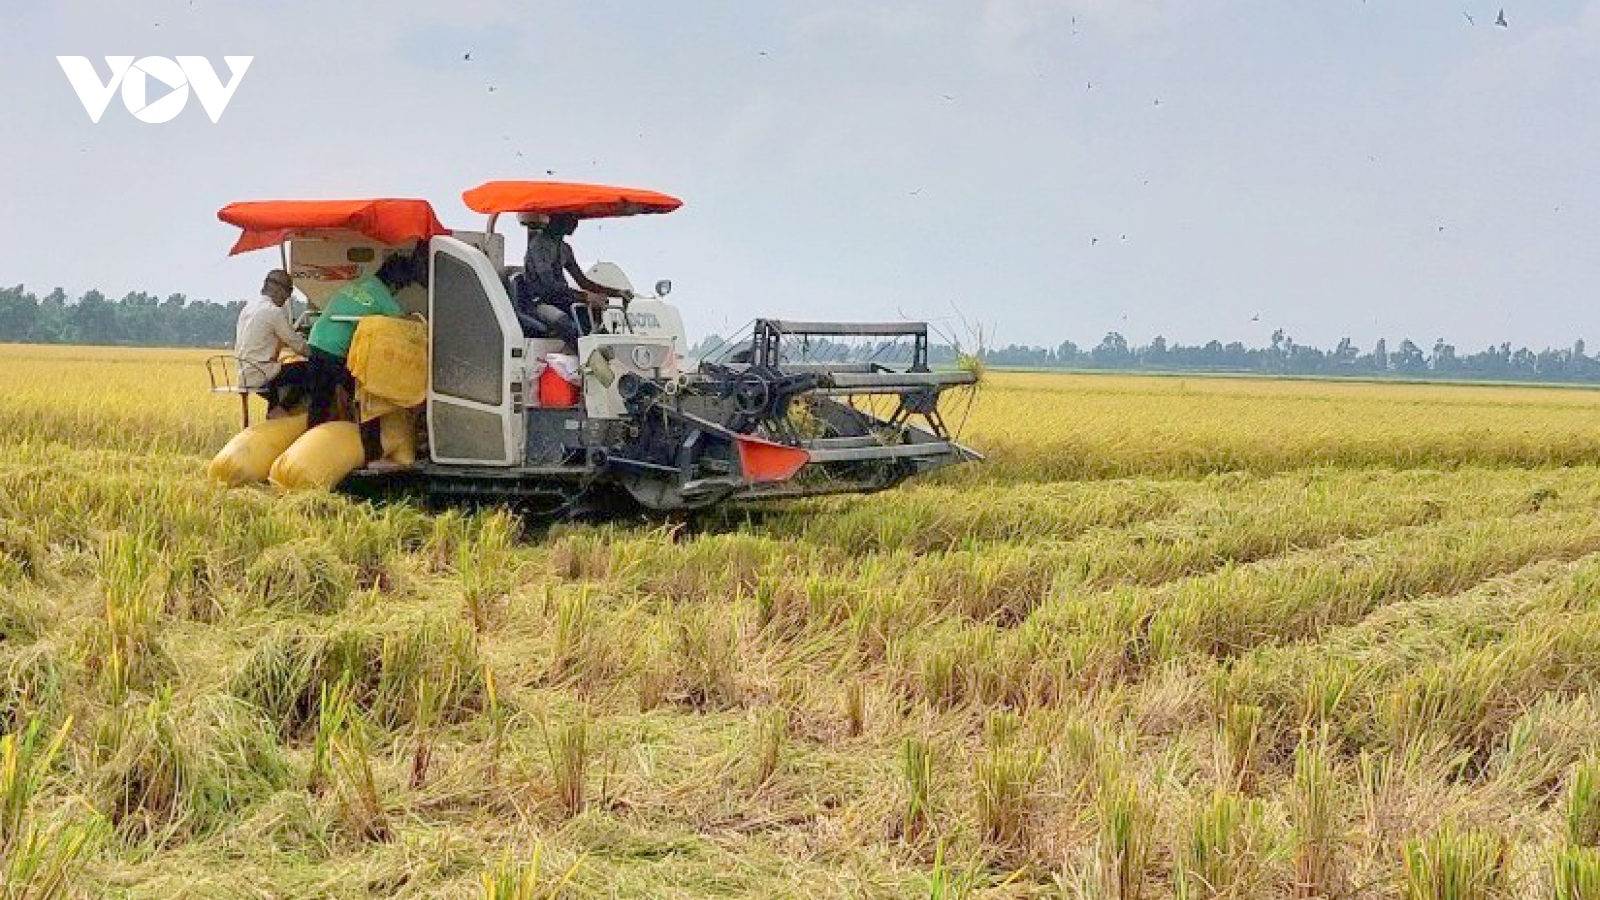 Đề án 1 triệu ha lúa vùng ĐBSCL - Chuyên nghiệp hóa ngành hàng lúa gạo